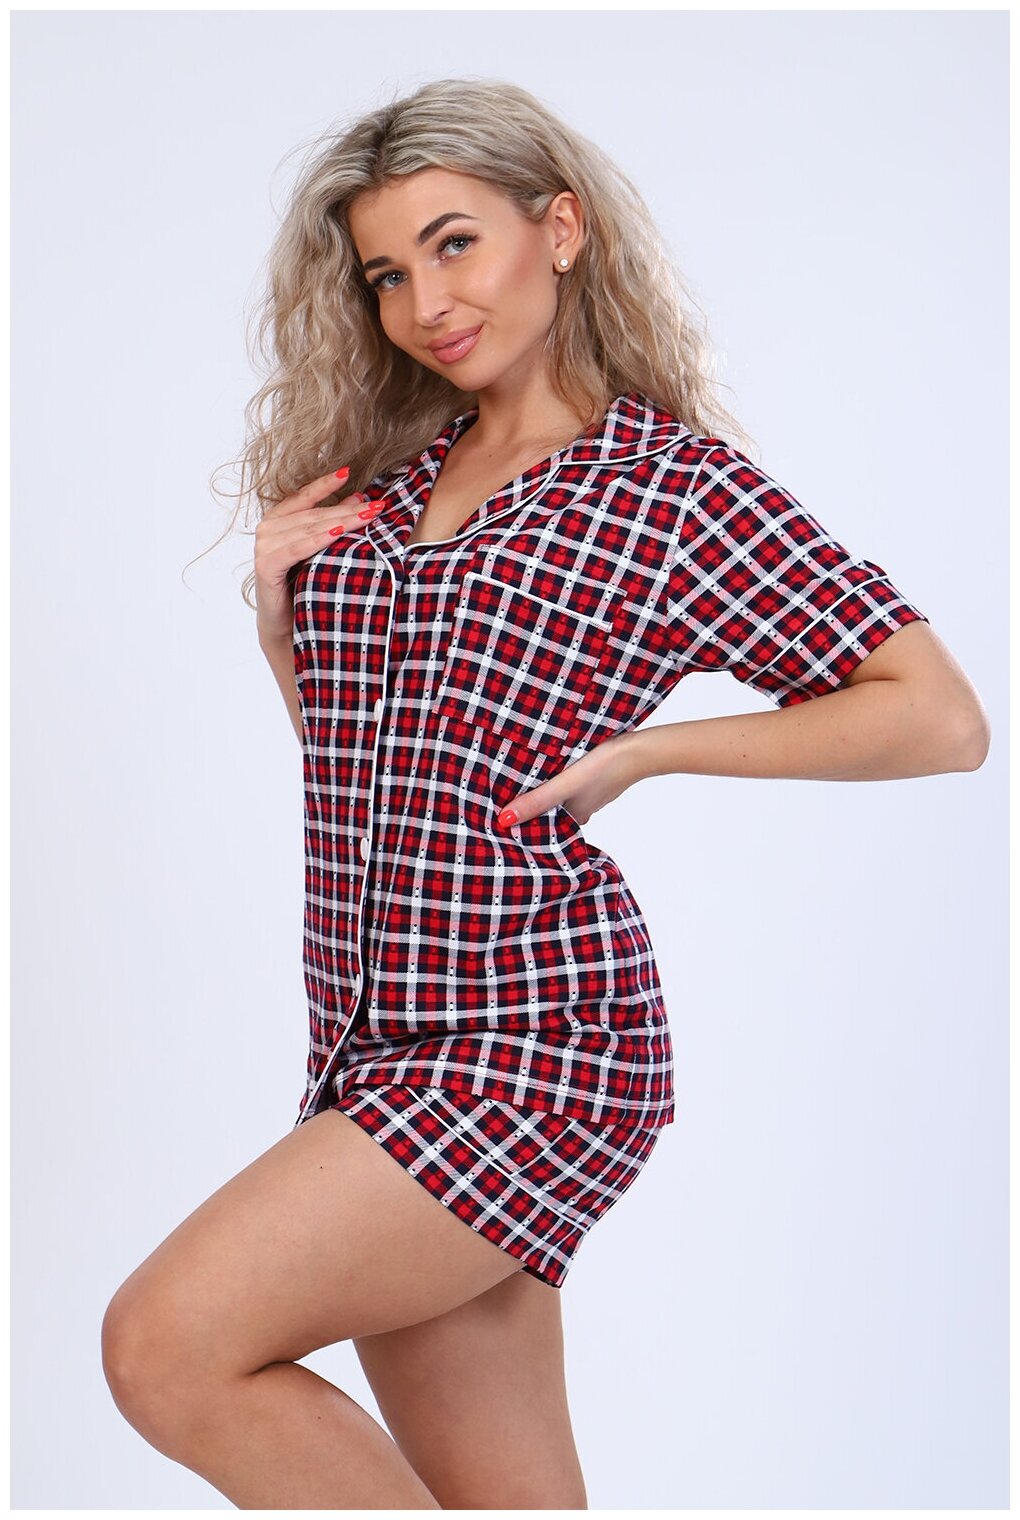 Женская домашняя пижама/костюм в клетку (рубашка+ шорты), размер 46 - фотография № 6